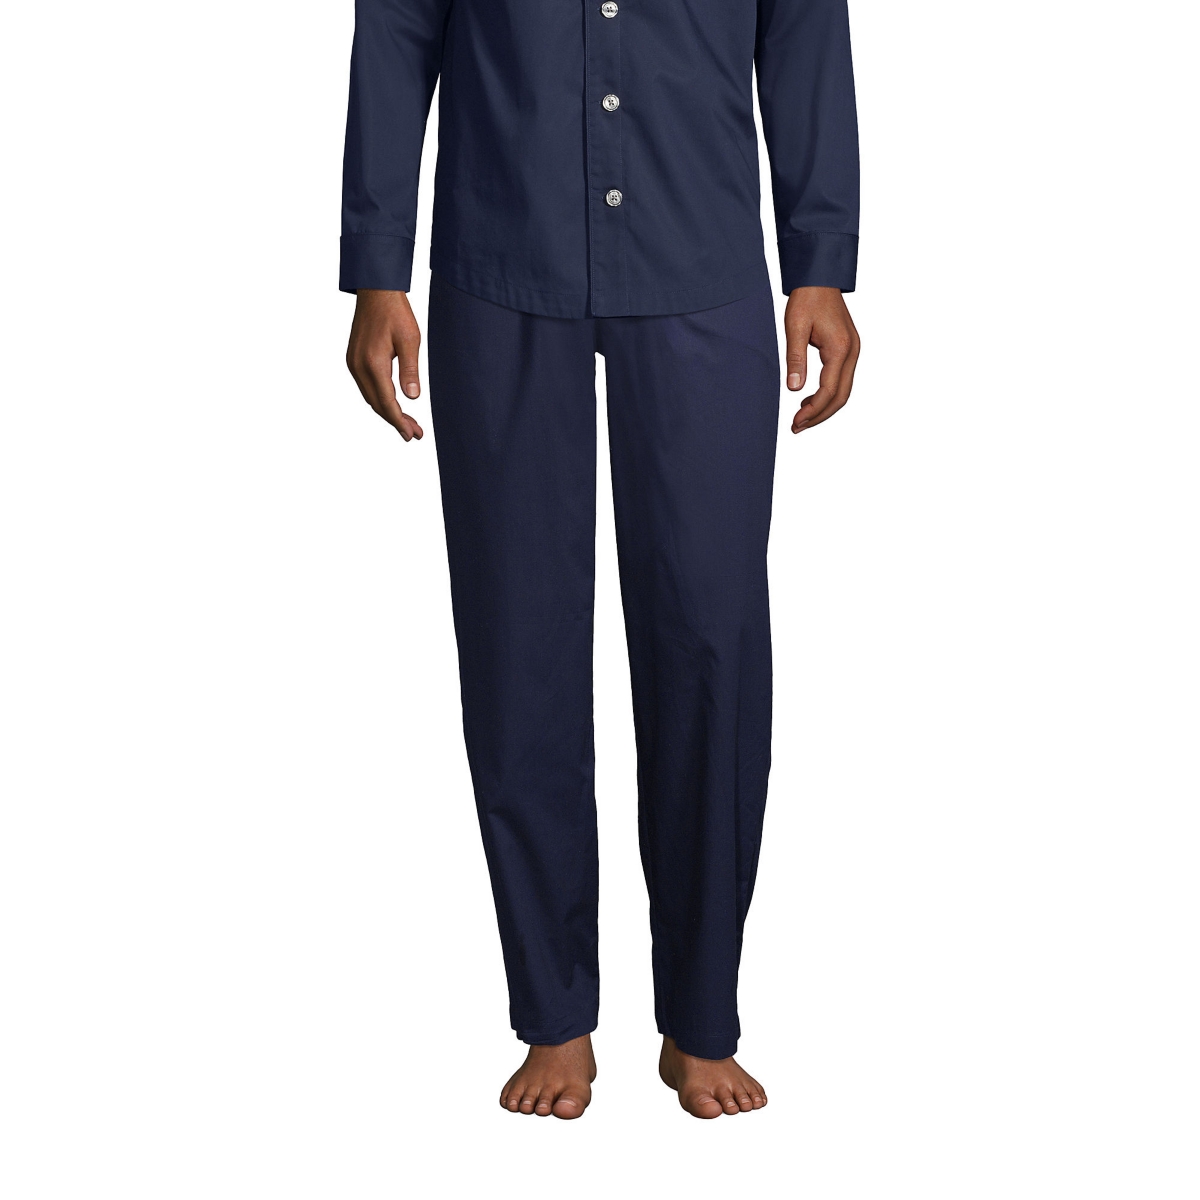 Men's Poplin Pajama Pants - Radiant navy